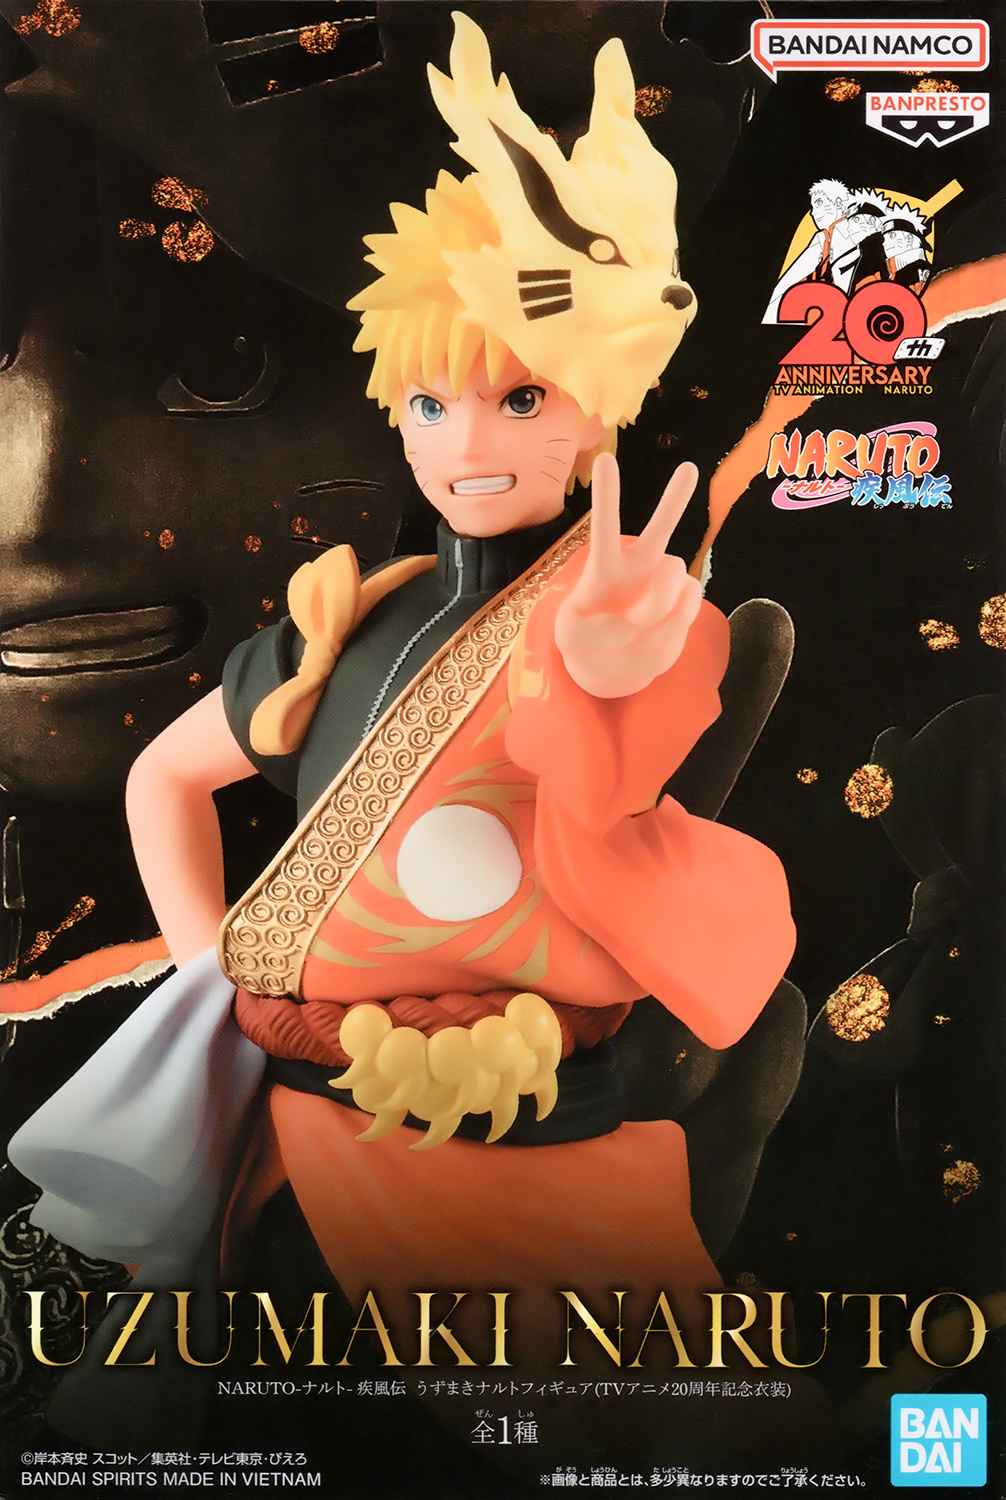 Naruto  Naruto shippuden anime, Naruto uzumaki, Naruto